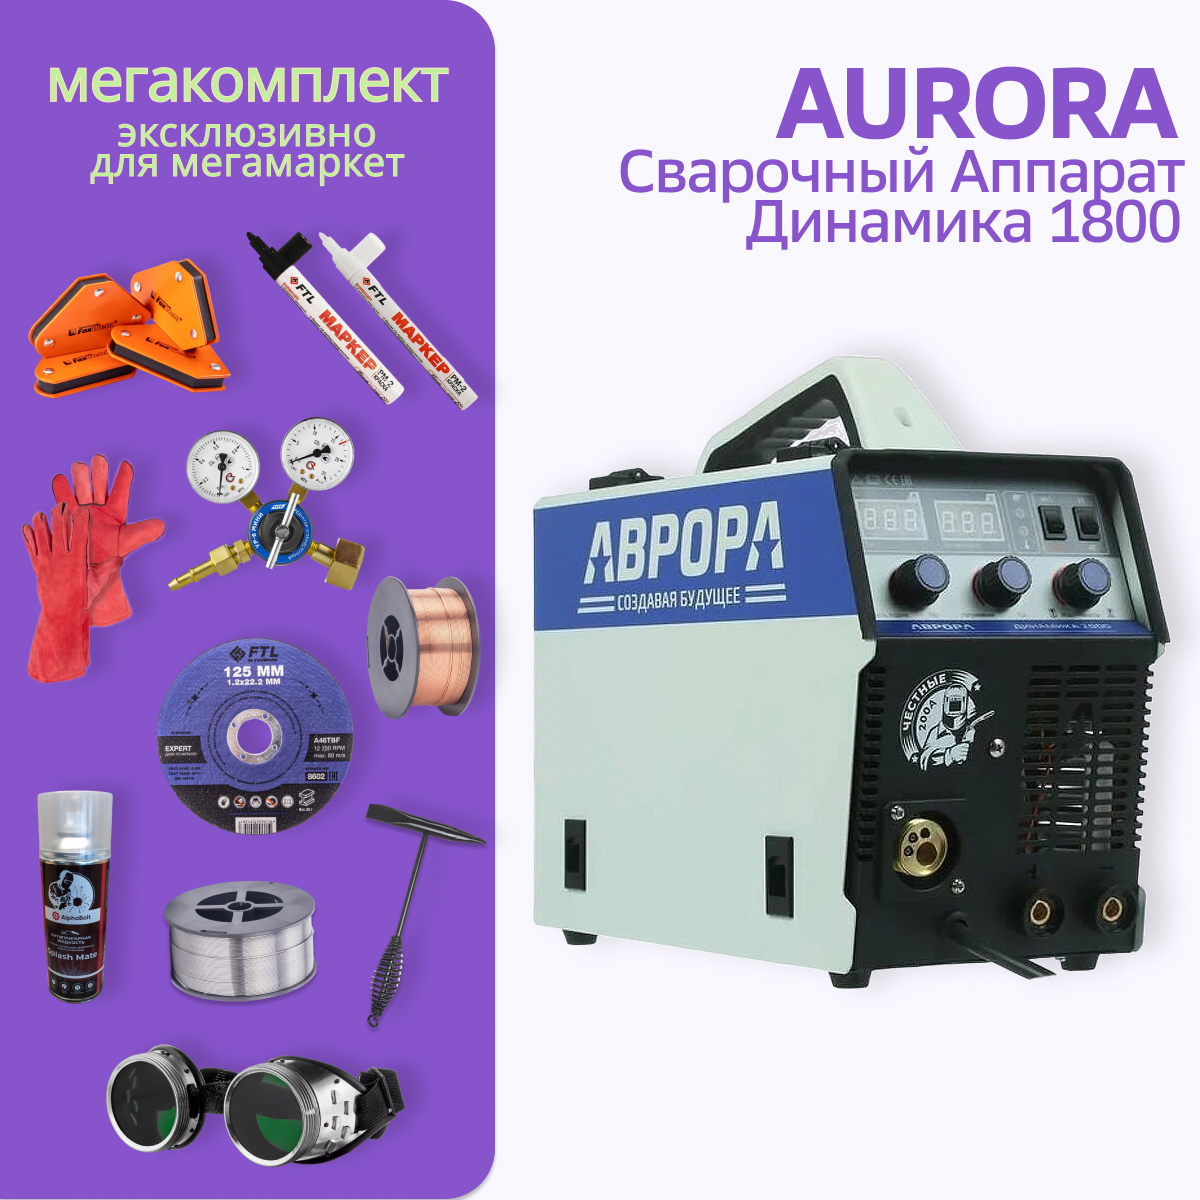 Сварочный полуавтомат АВРОРА Динамика 1800 МЕГА комплект